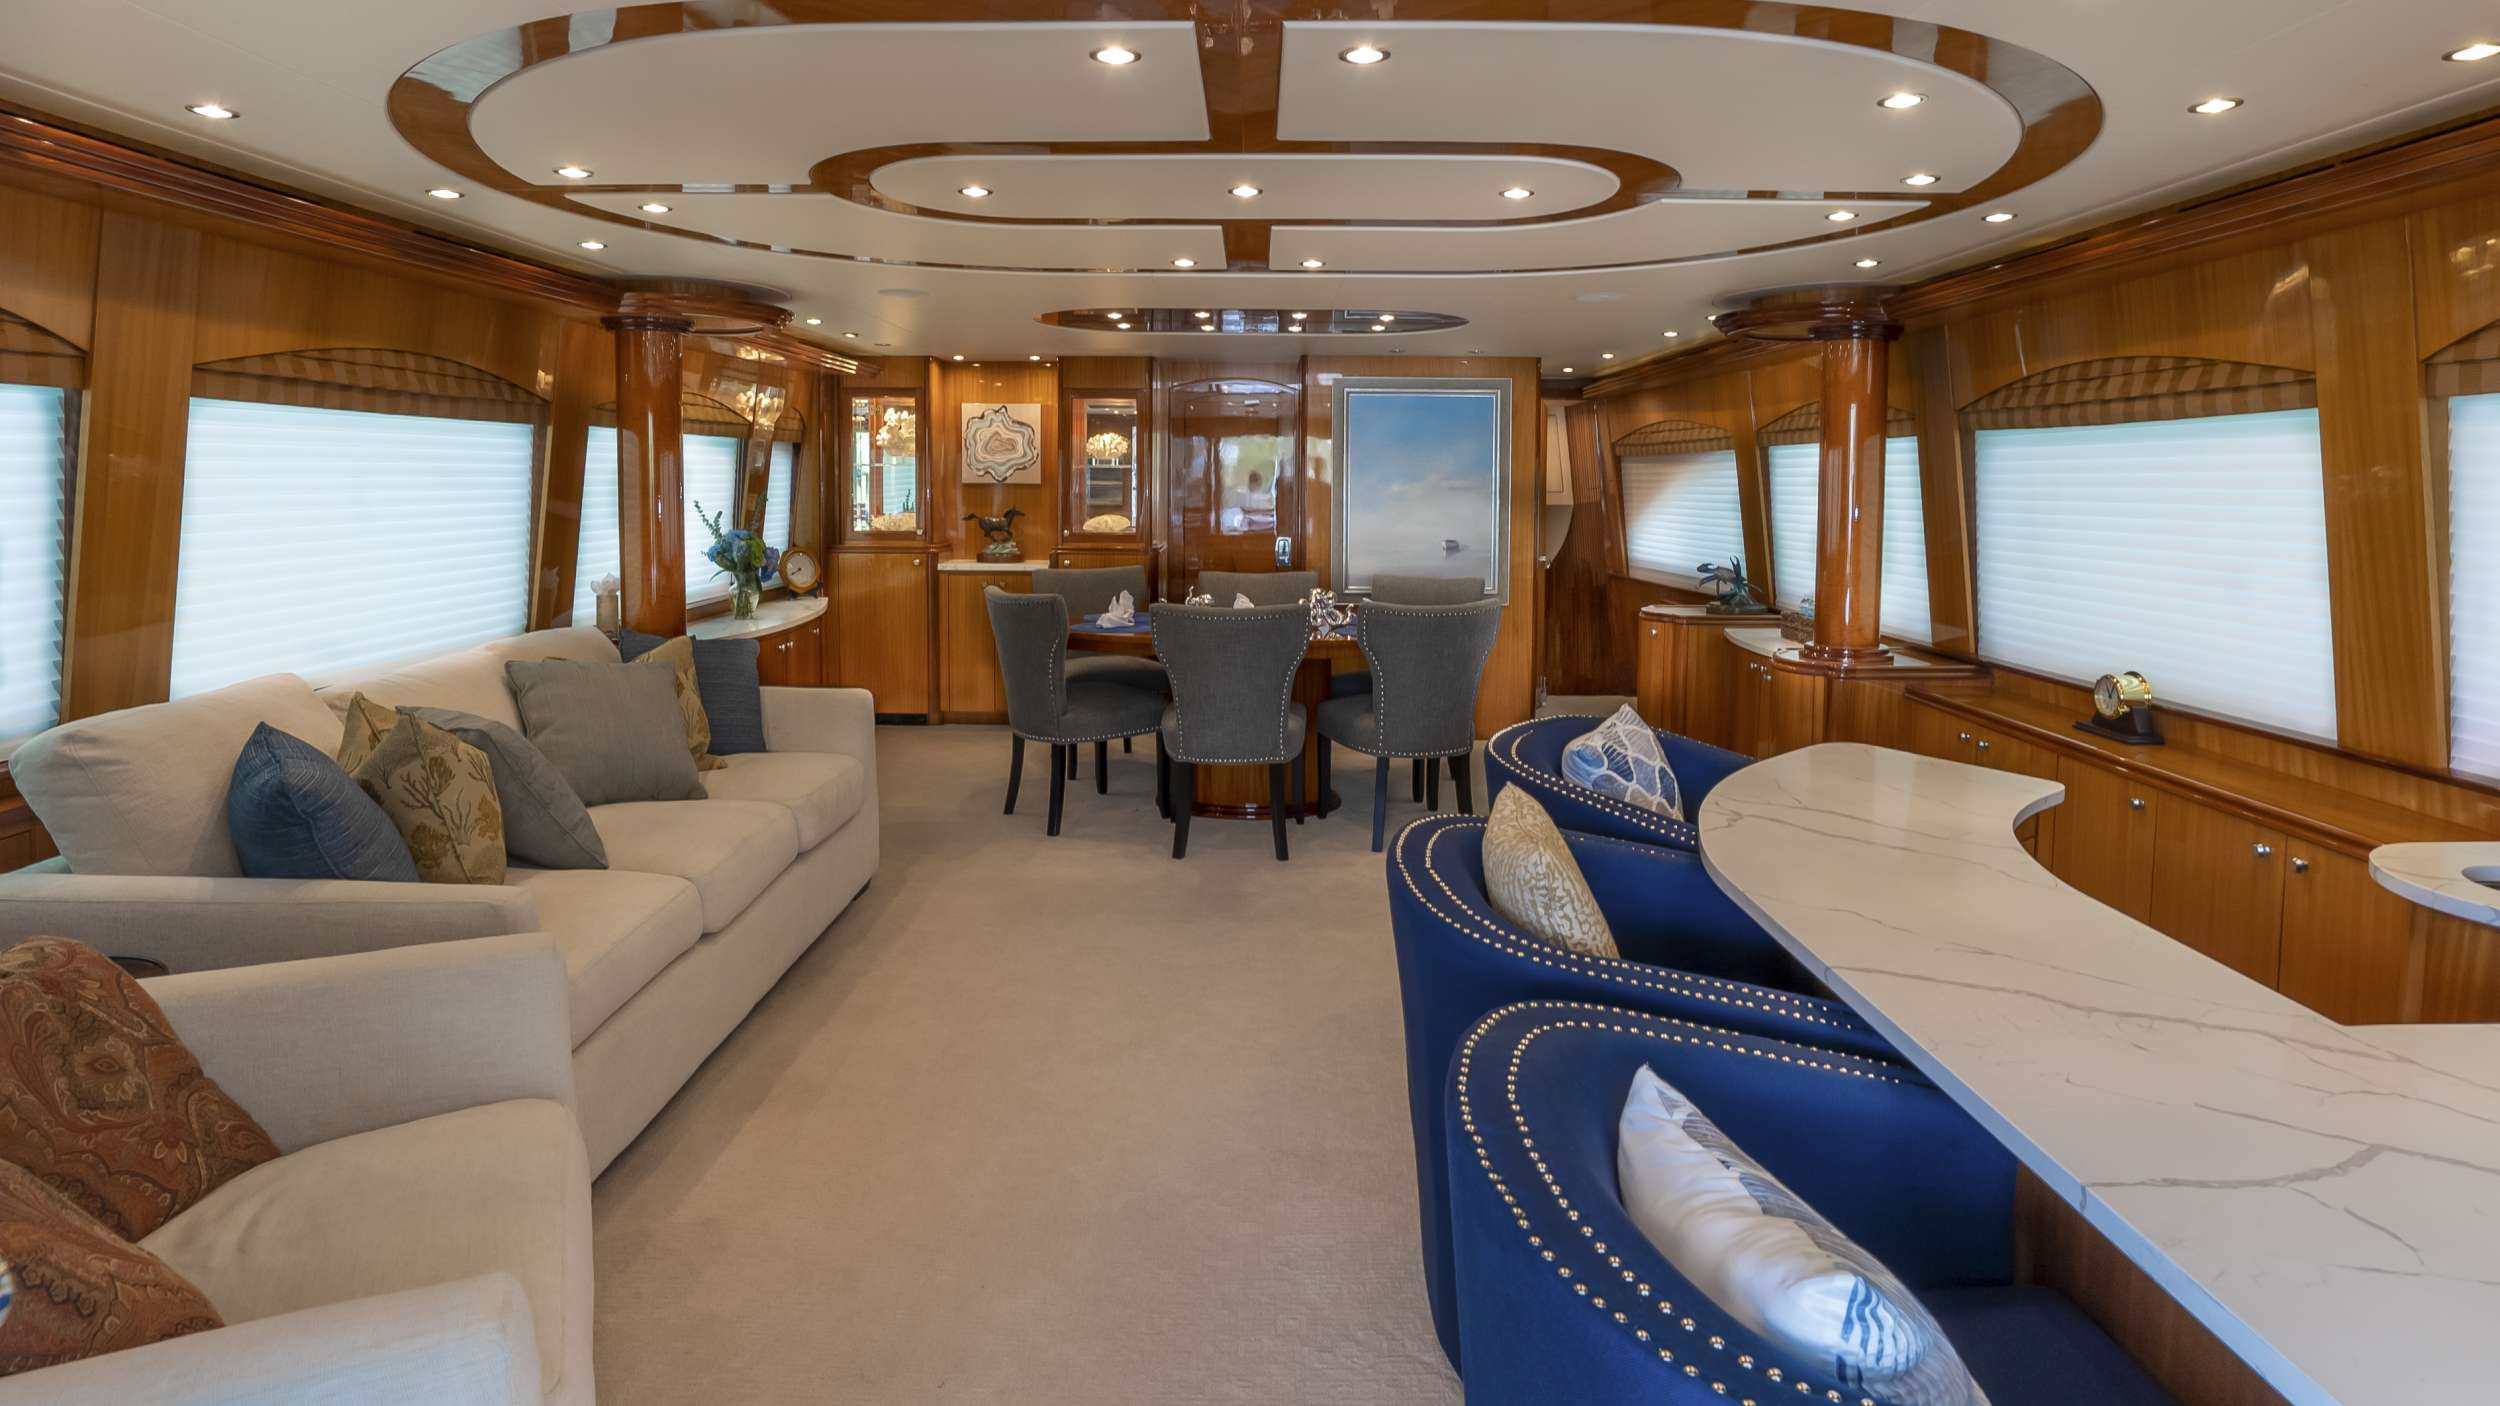 GALLOPIN Yacht Charter - Main Salon